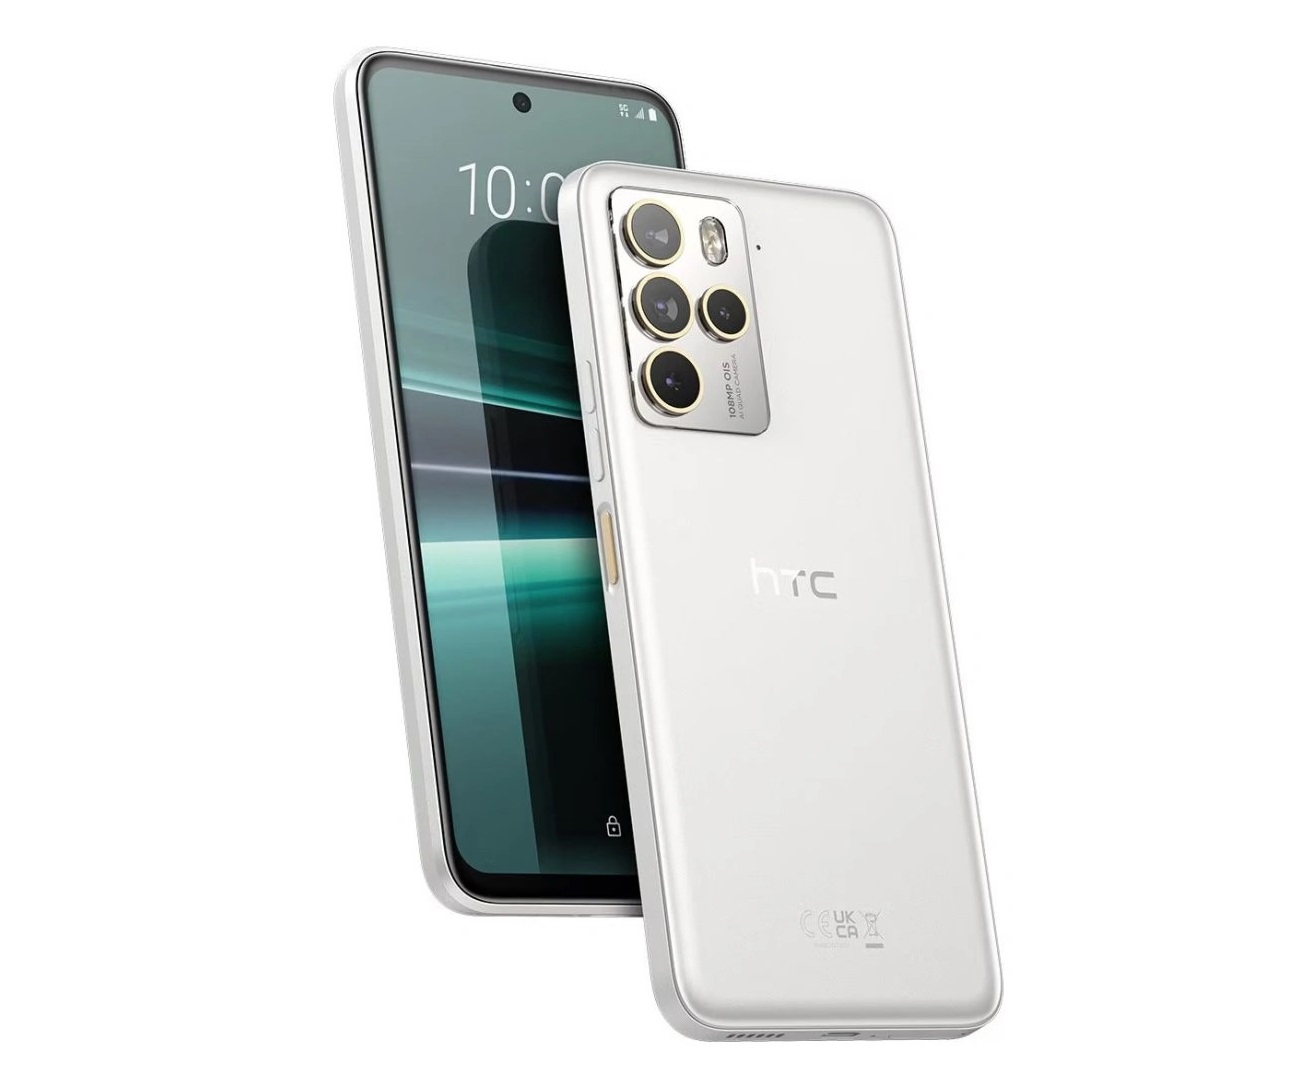 смартфон HTC U23 Pro